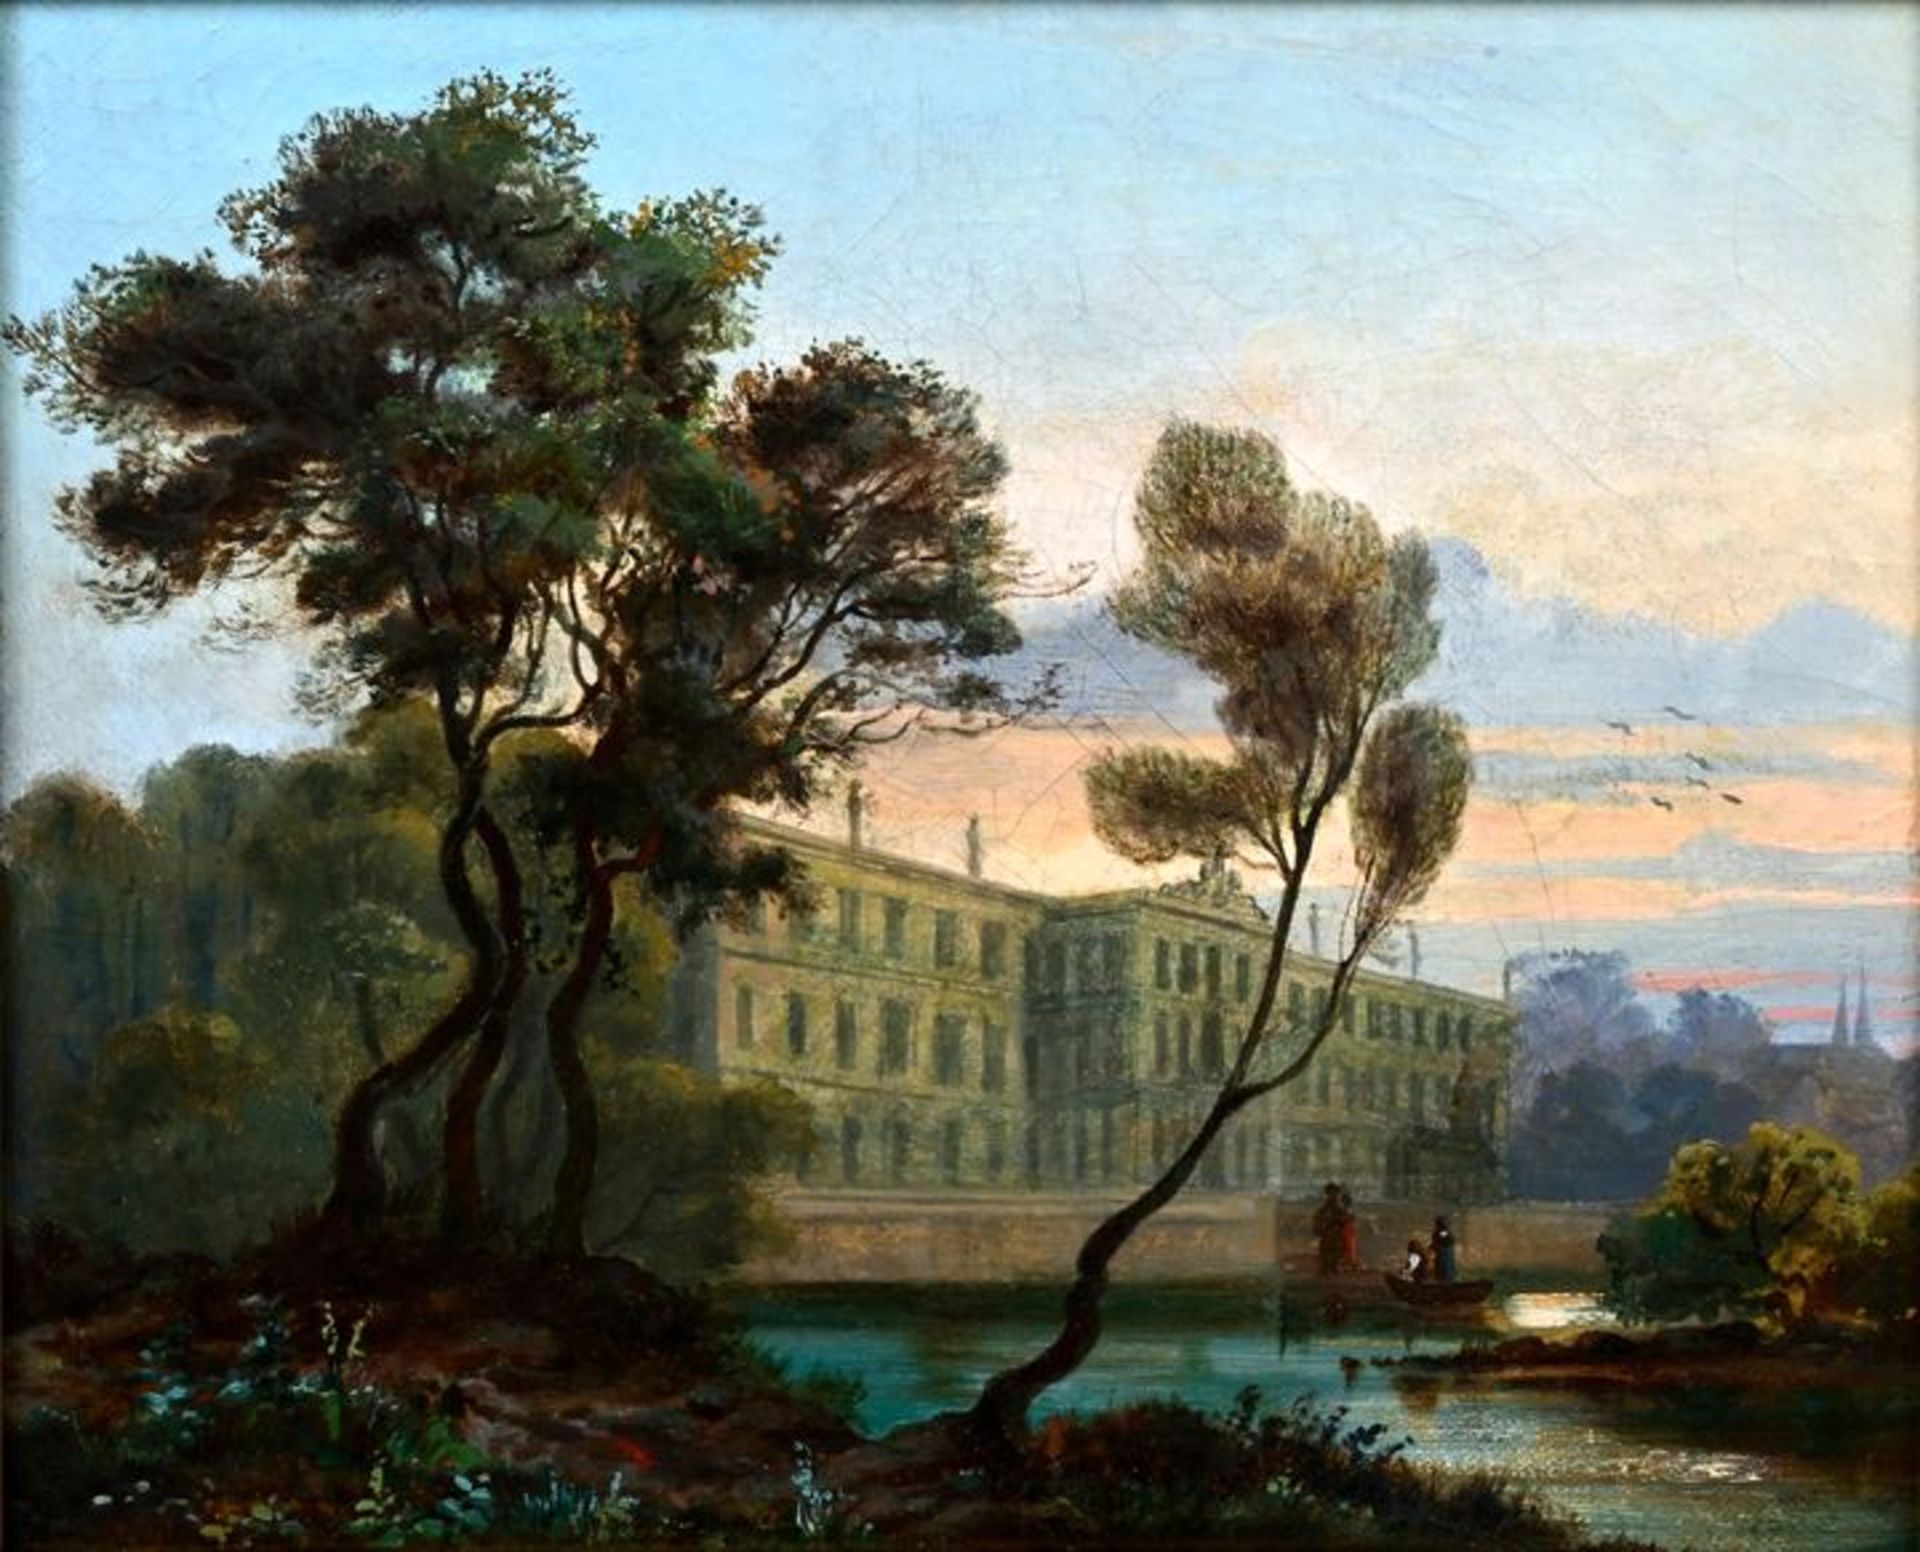 Berliner Maler, Gemälde, bez. Carl Blechen / Blechen, Carl, landscape with castle